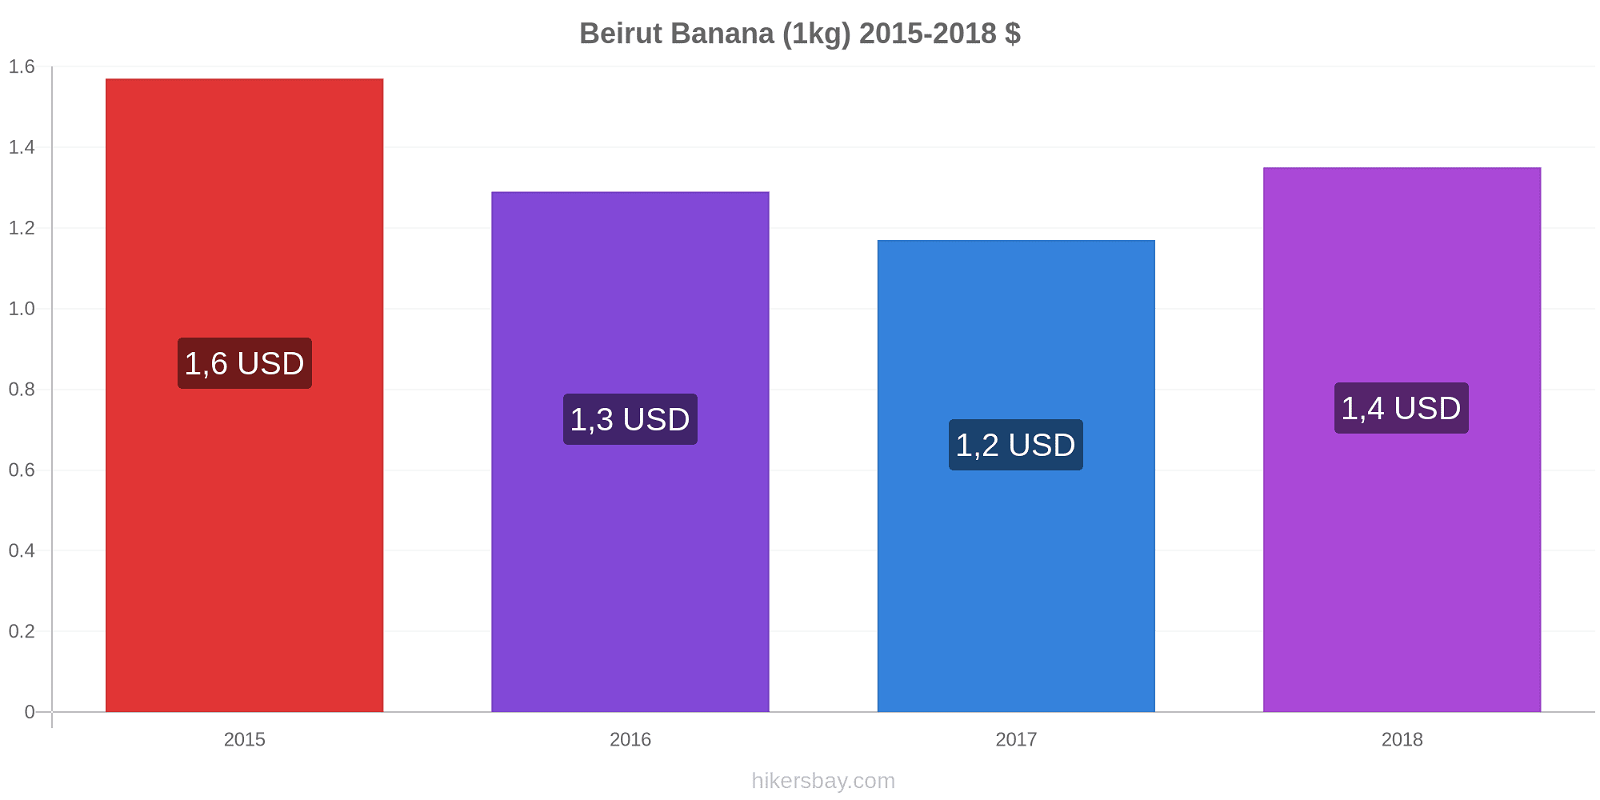 Beirut variazioni di prezzo Banana (1kg) hikersbay.com